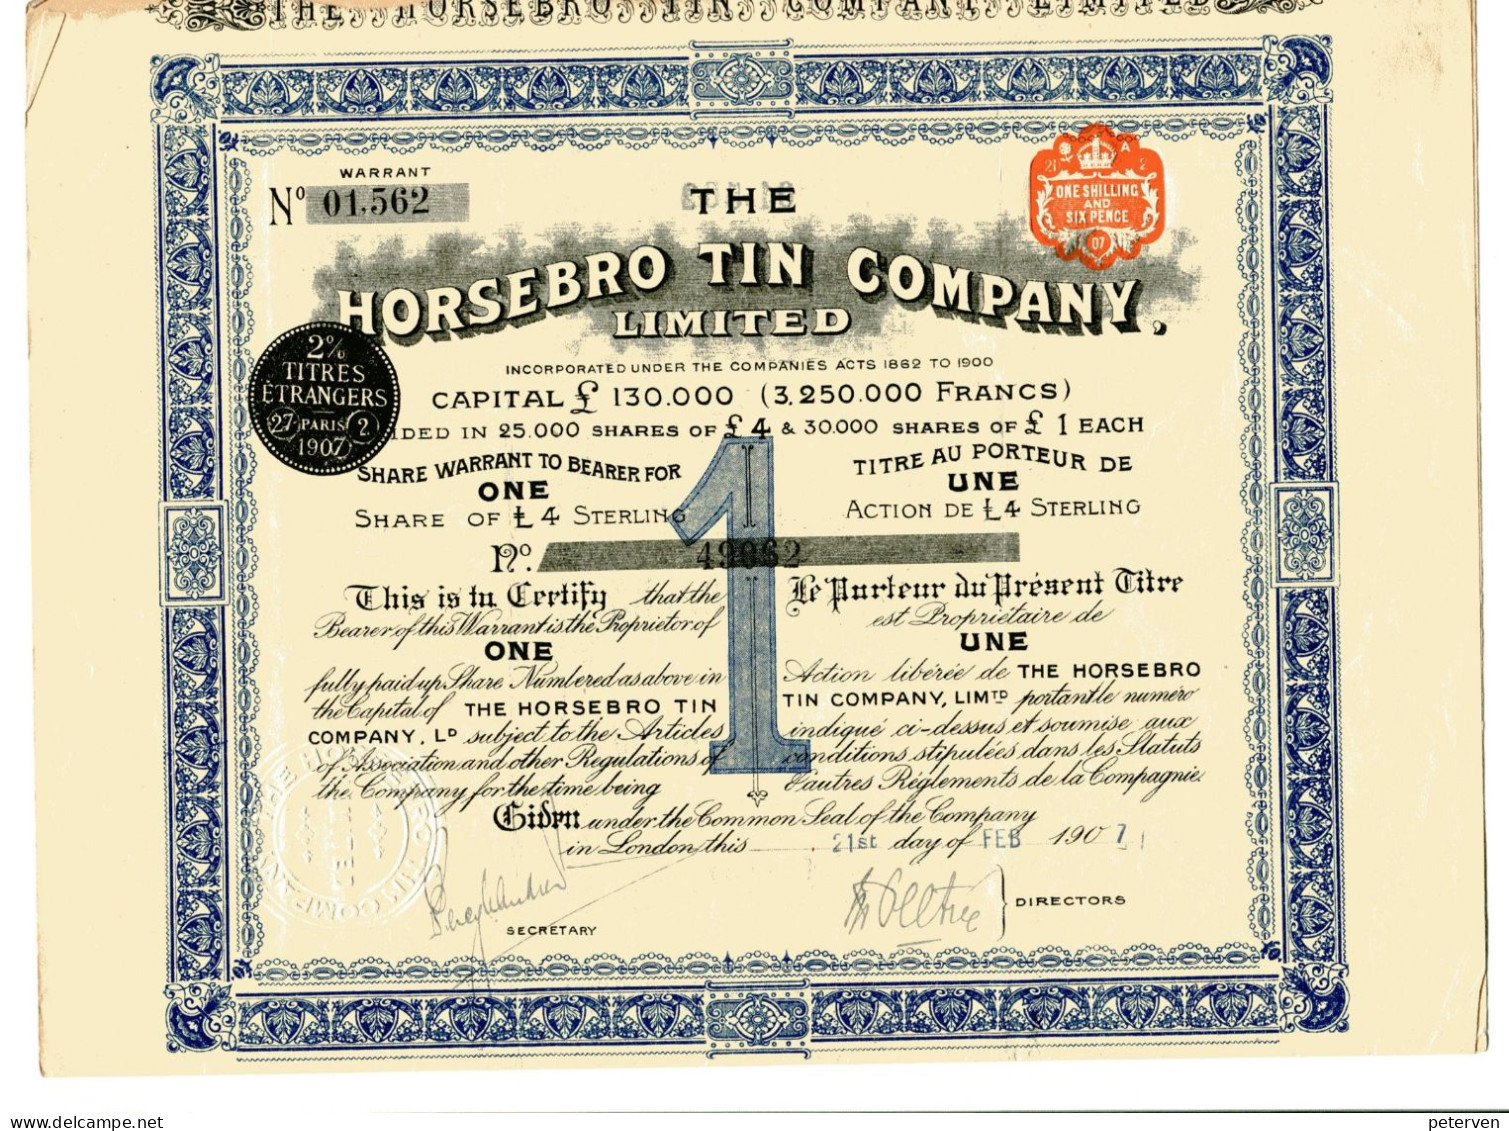 The HORSEBRO TIN COMPANY, Limited - Mineral